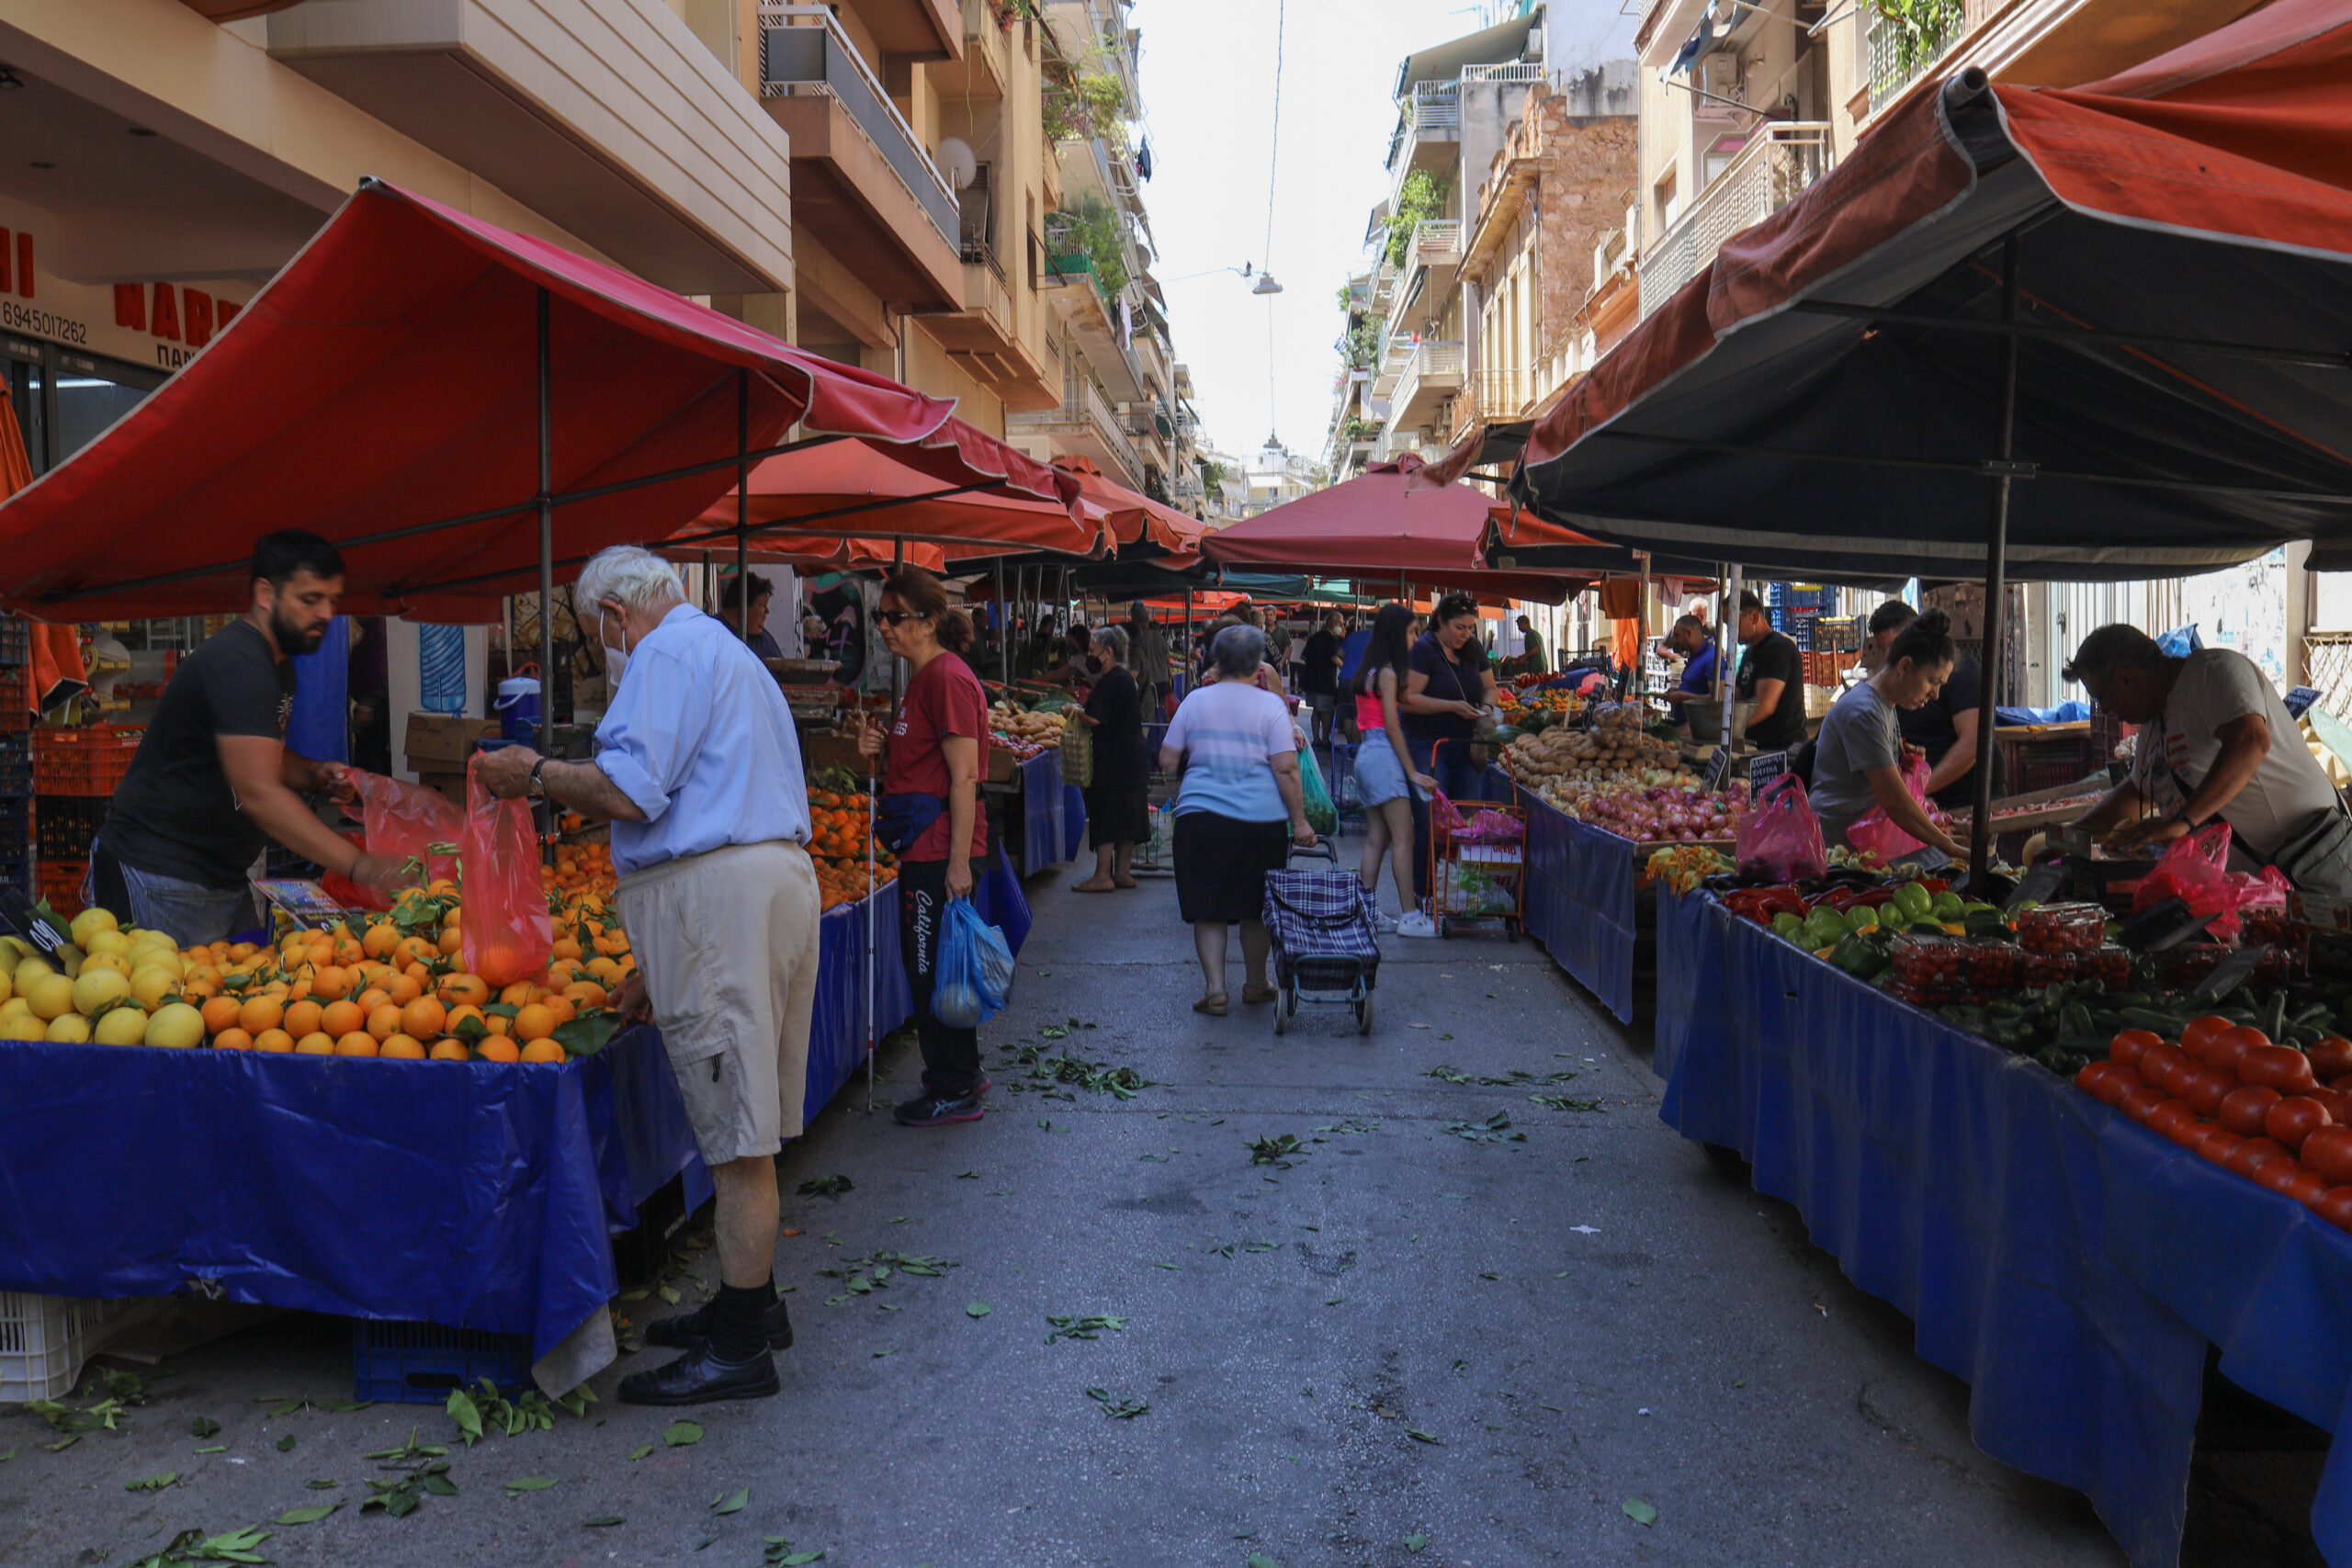 Στη Θεσσαλονίκη η πρώτη απογευματινή λαϊκή αγορά